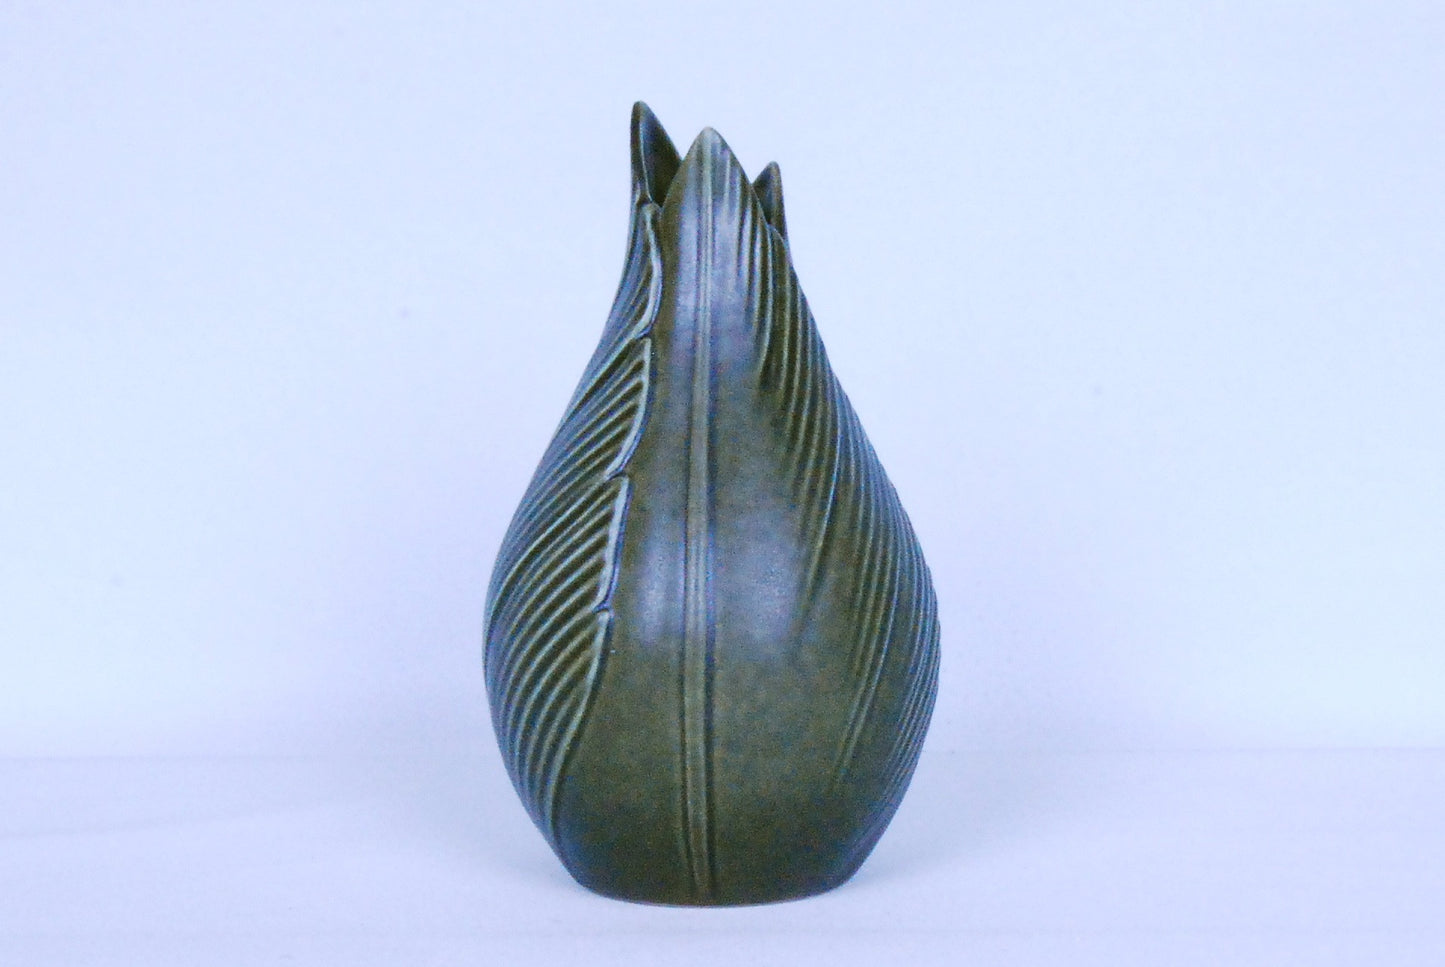 Stoneware bud vase by Søholm